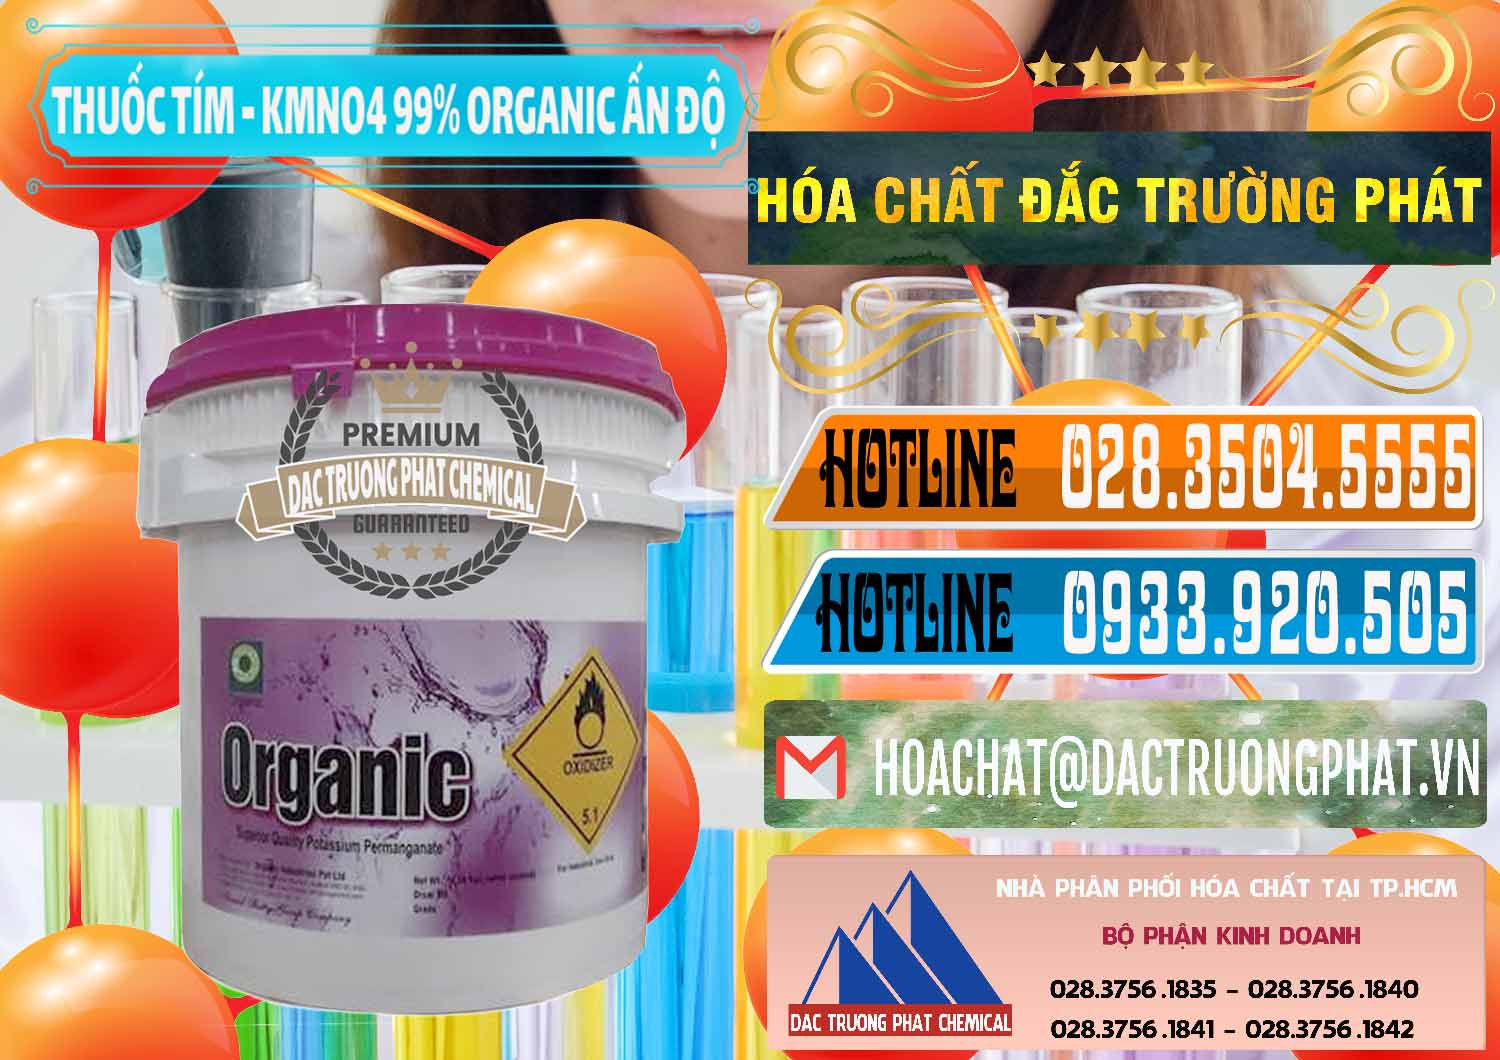 Nơi chuyên cung cấp ( bán ) Thuốc Tím - KMNO4 99% Organic Ấn Độ India - 0216 - Công ty cung cấp ( phân phối ) hóa chất tại TP.HCM - stmp.net